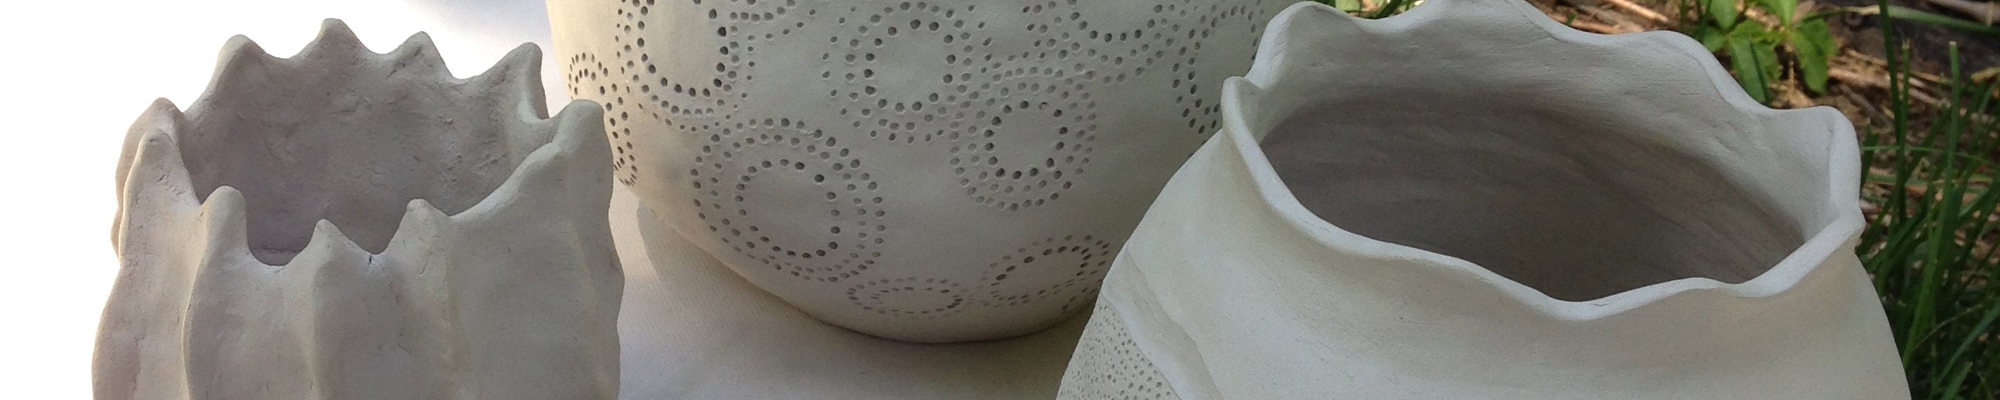 Laurel Scott ceramic work